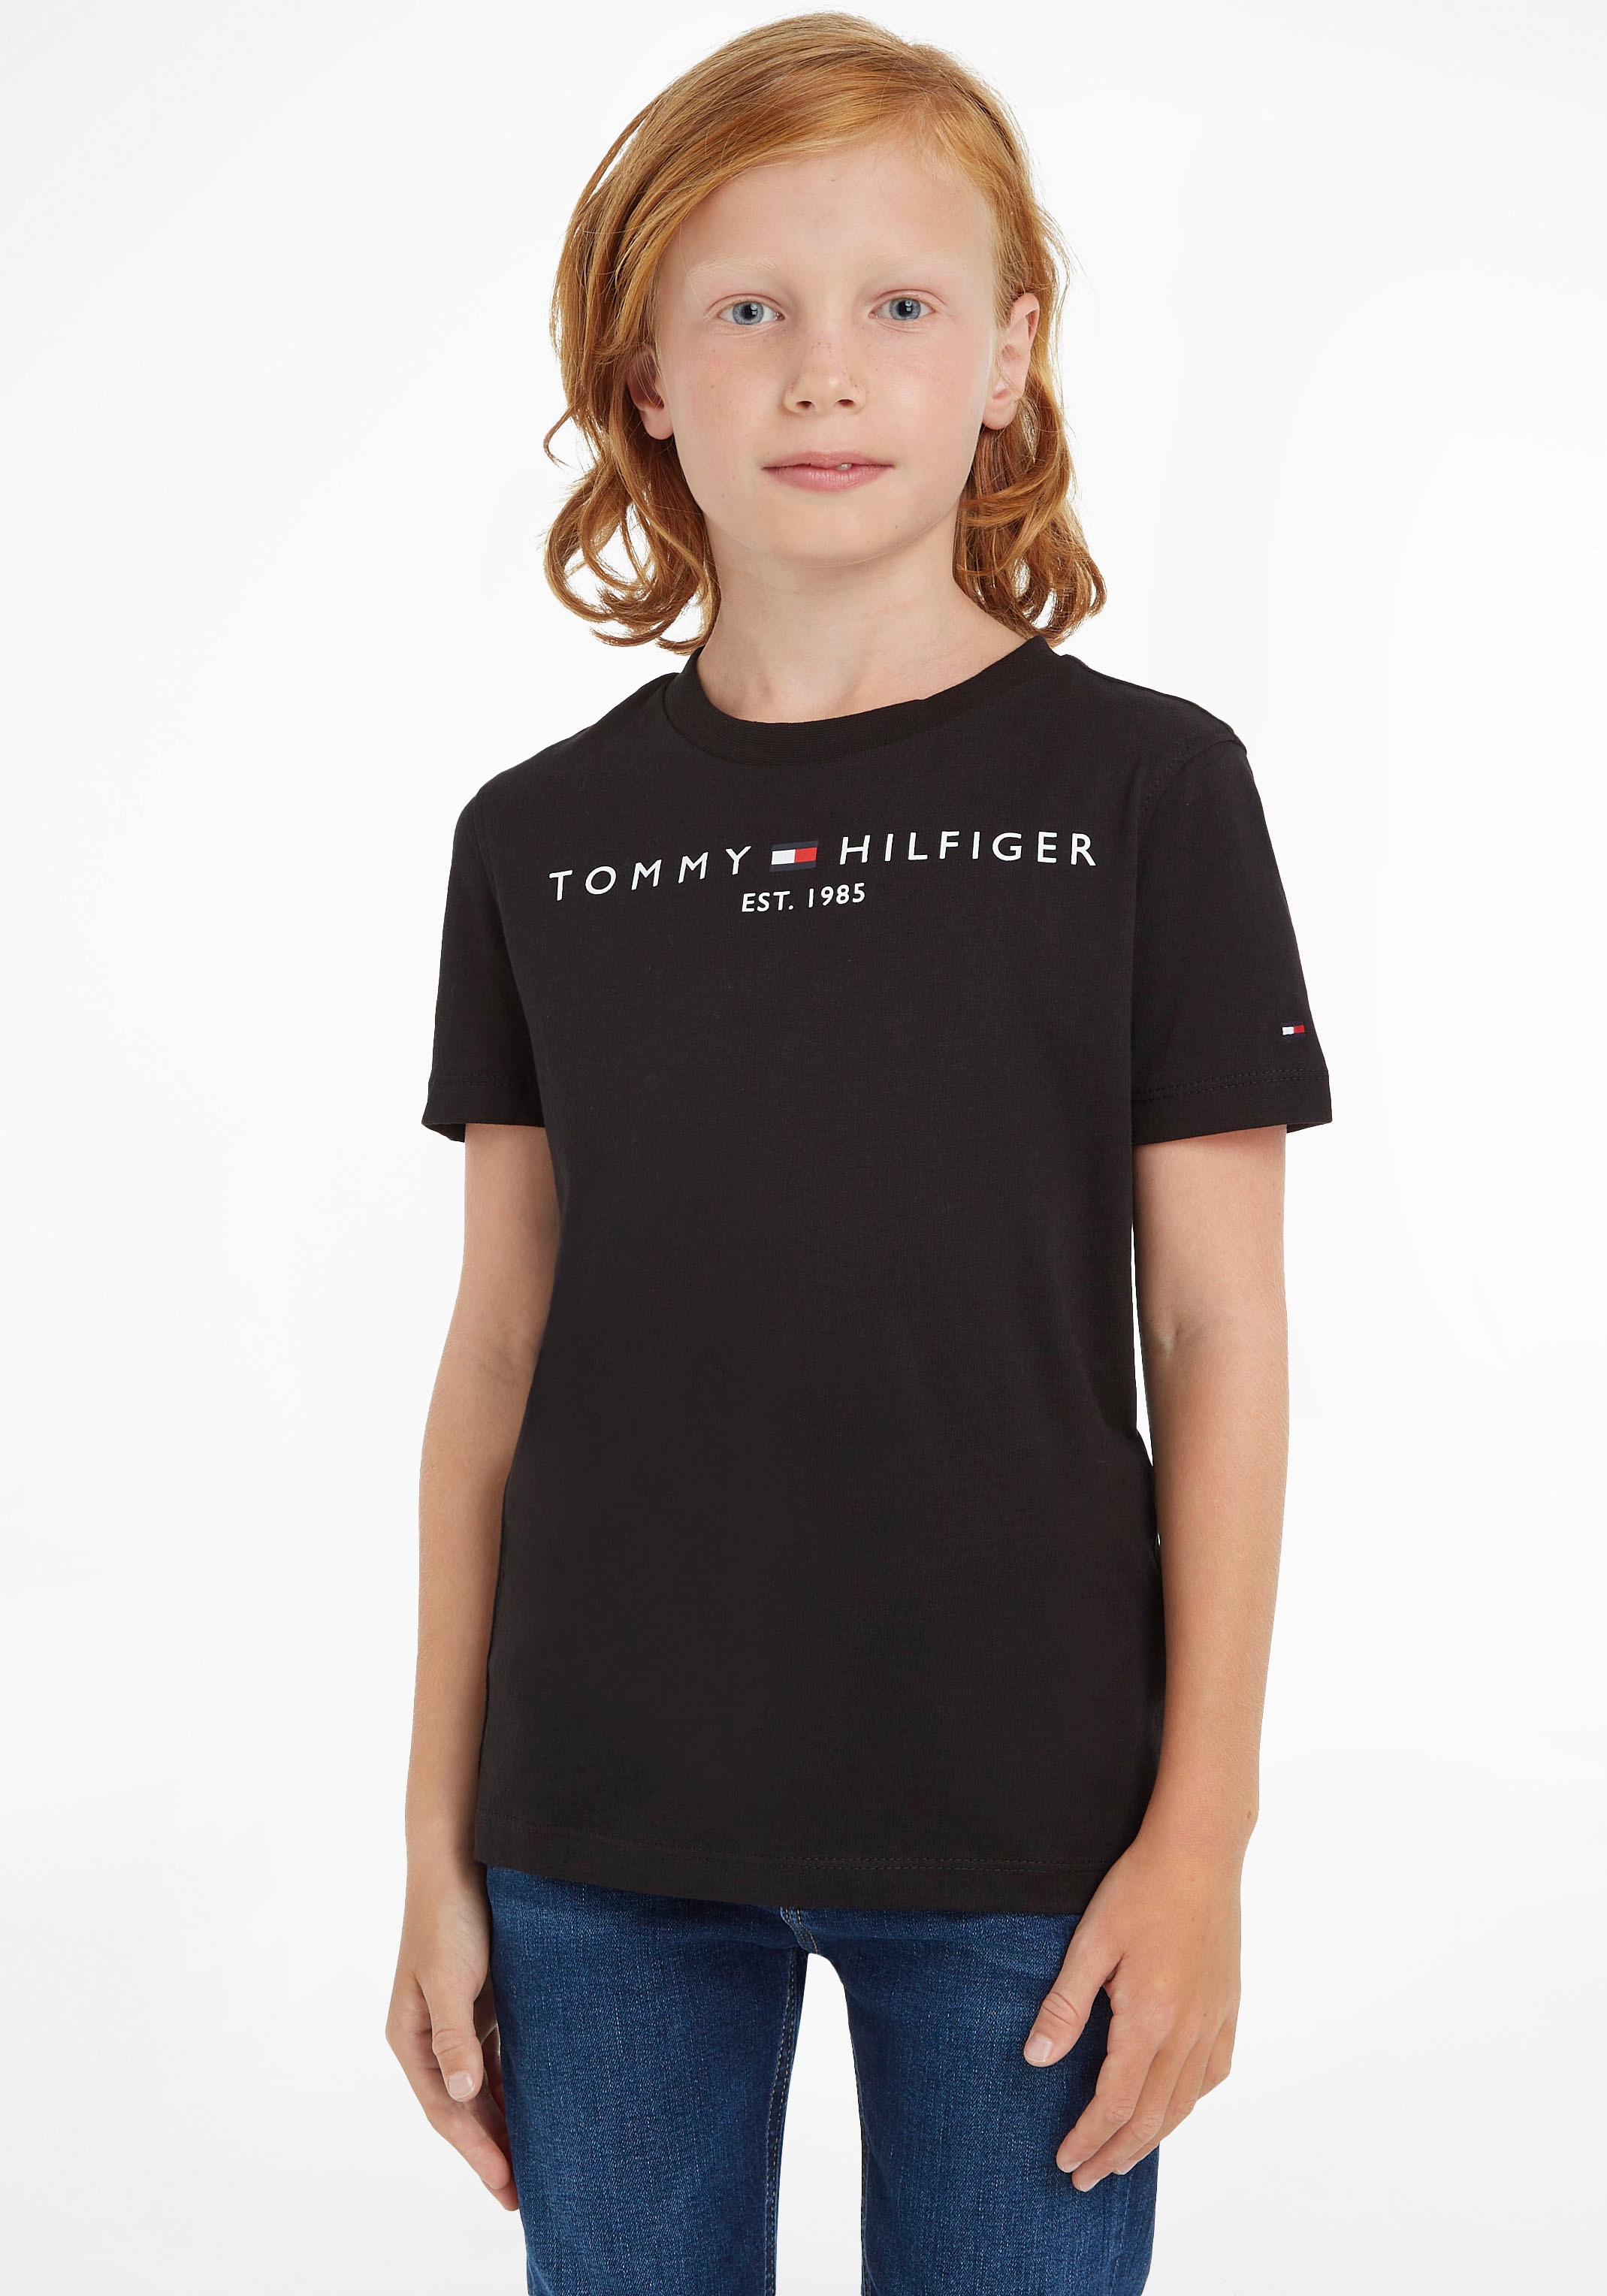 Tommy Hilfiger T-Shirt »ESSENTIAL TEE«, Kinder Kids Junior MiniMe,für Jungen